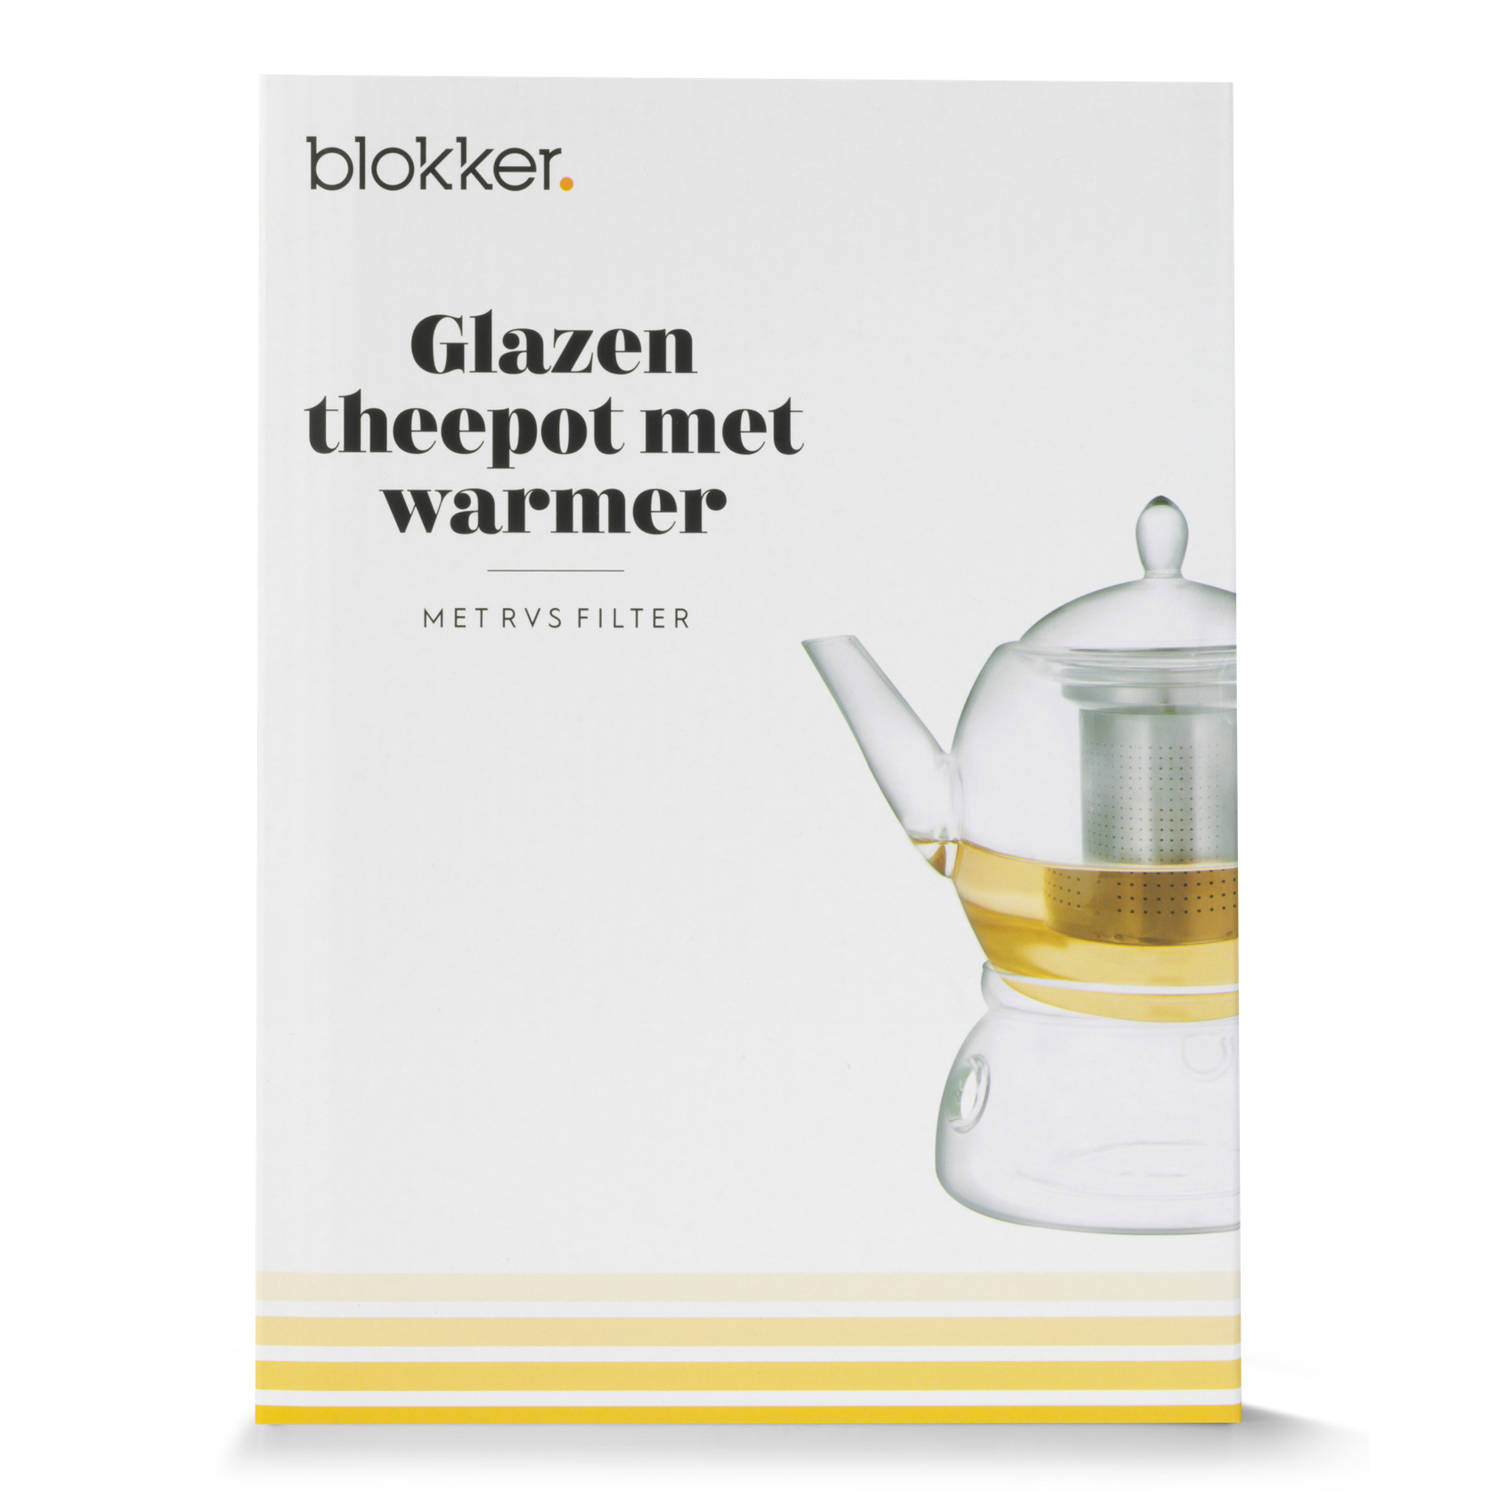 Blokker theepot met warmer & filter - 1,35 liter | Blokker